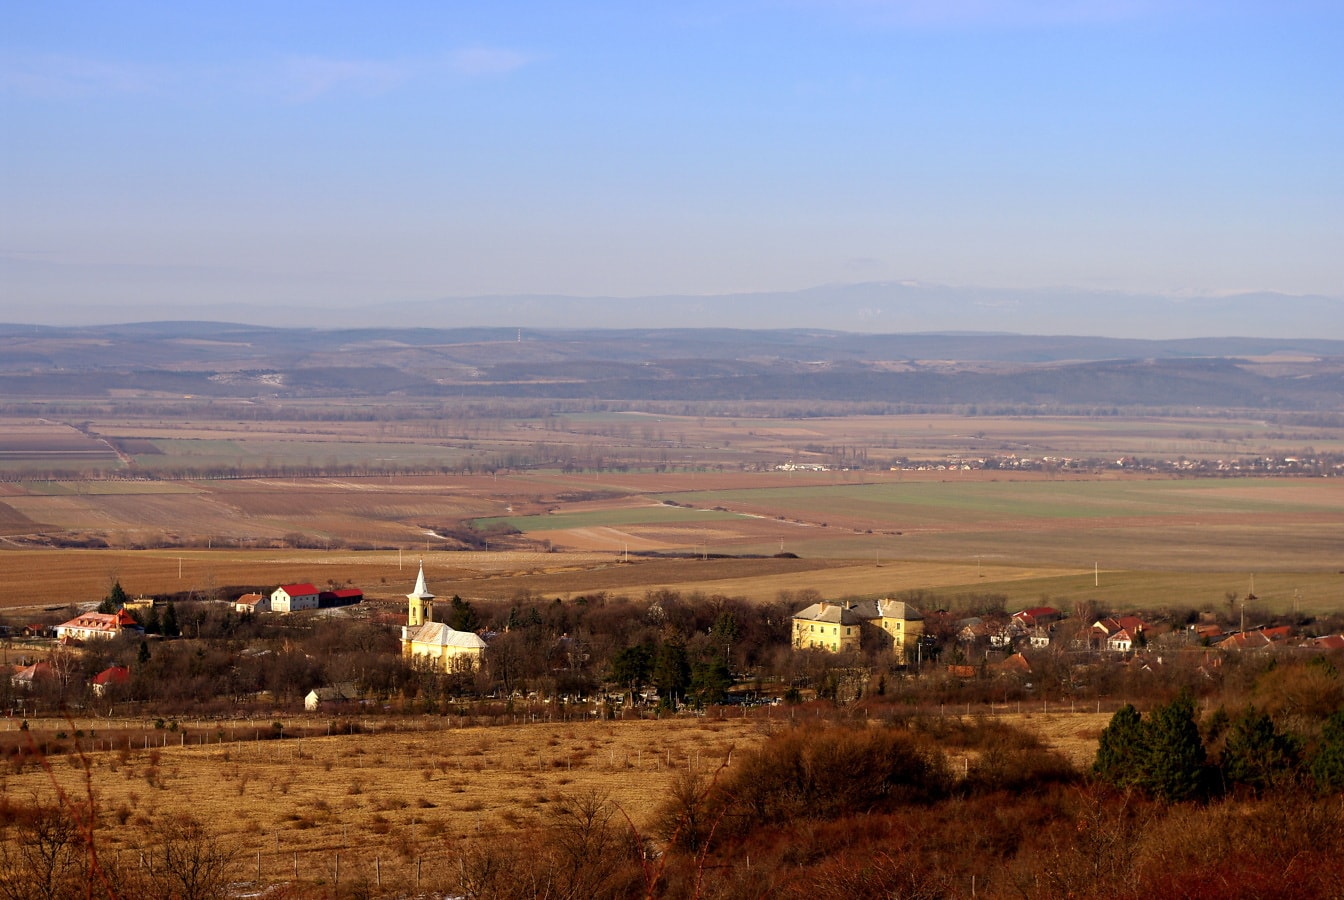 Panoramautsikt över landsbygdens fält och bosättning från sluttningen